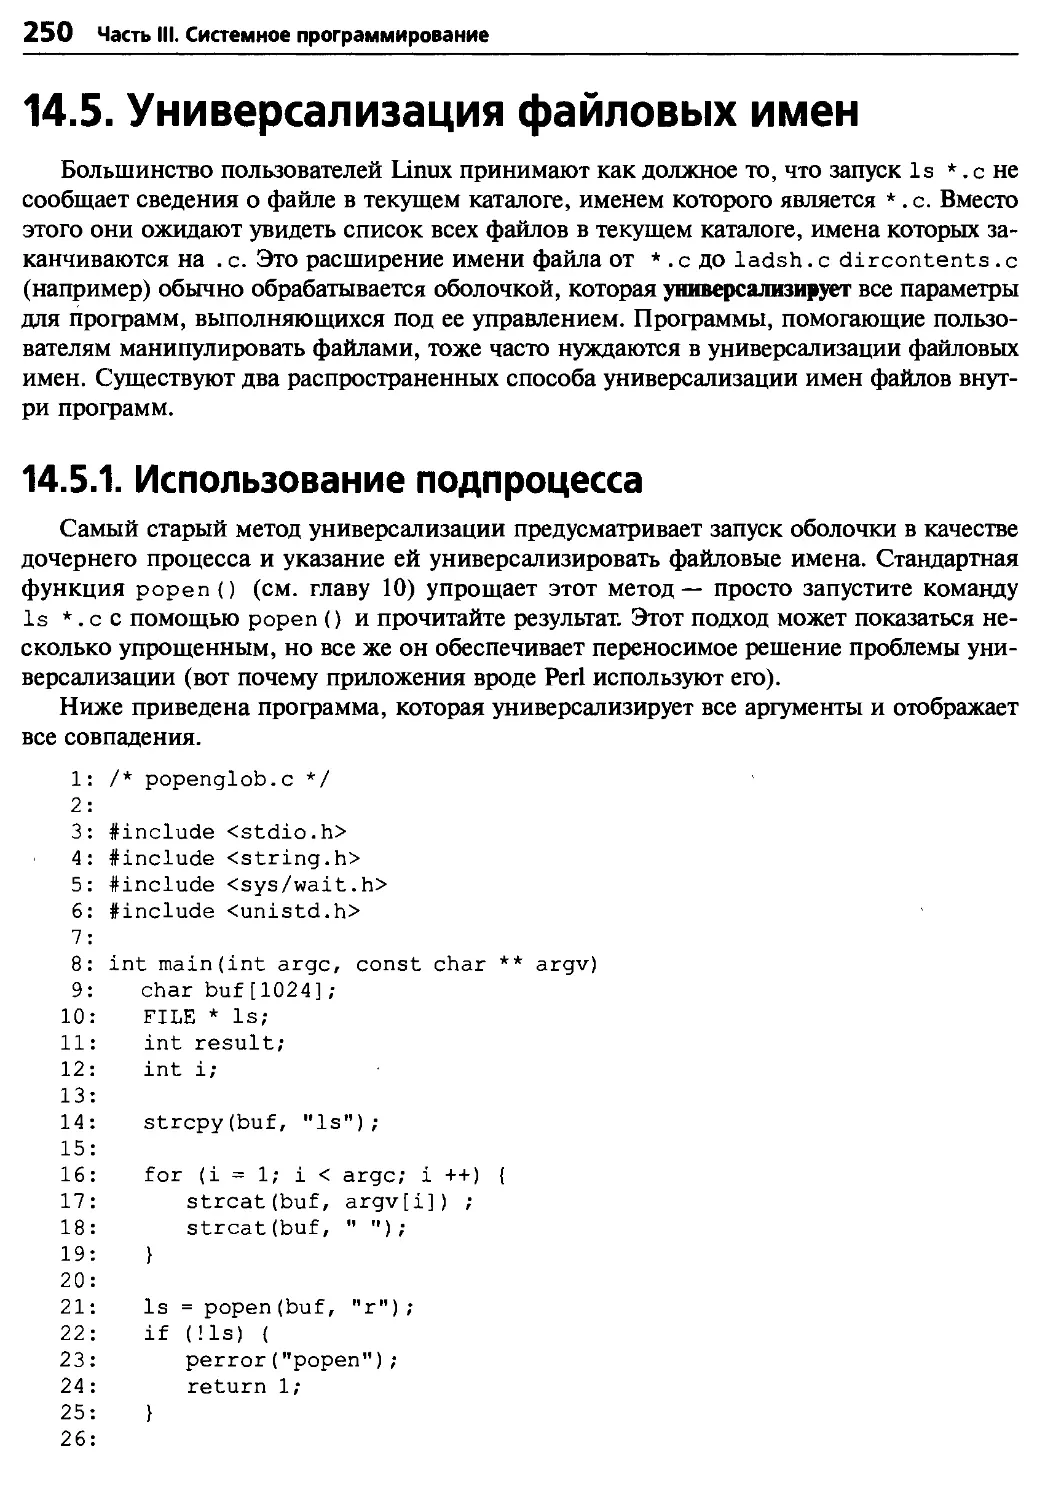 14.5. Универсализация файловых имен
14.5.1. Использование подпроцесса